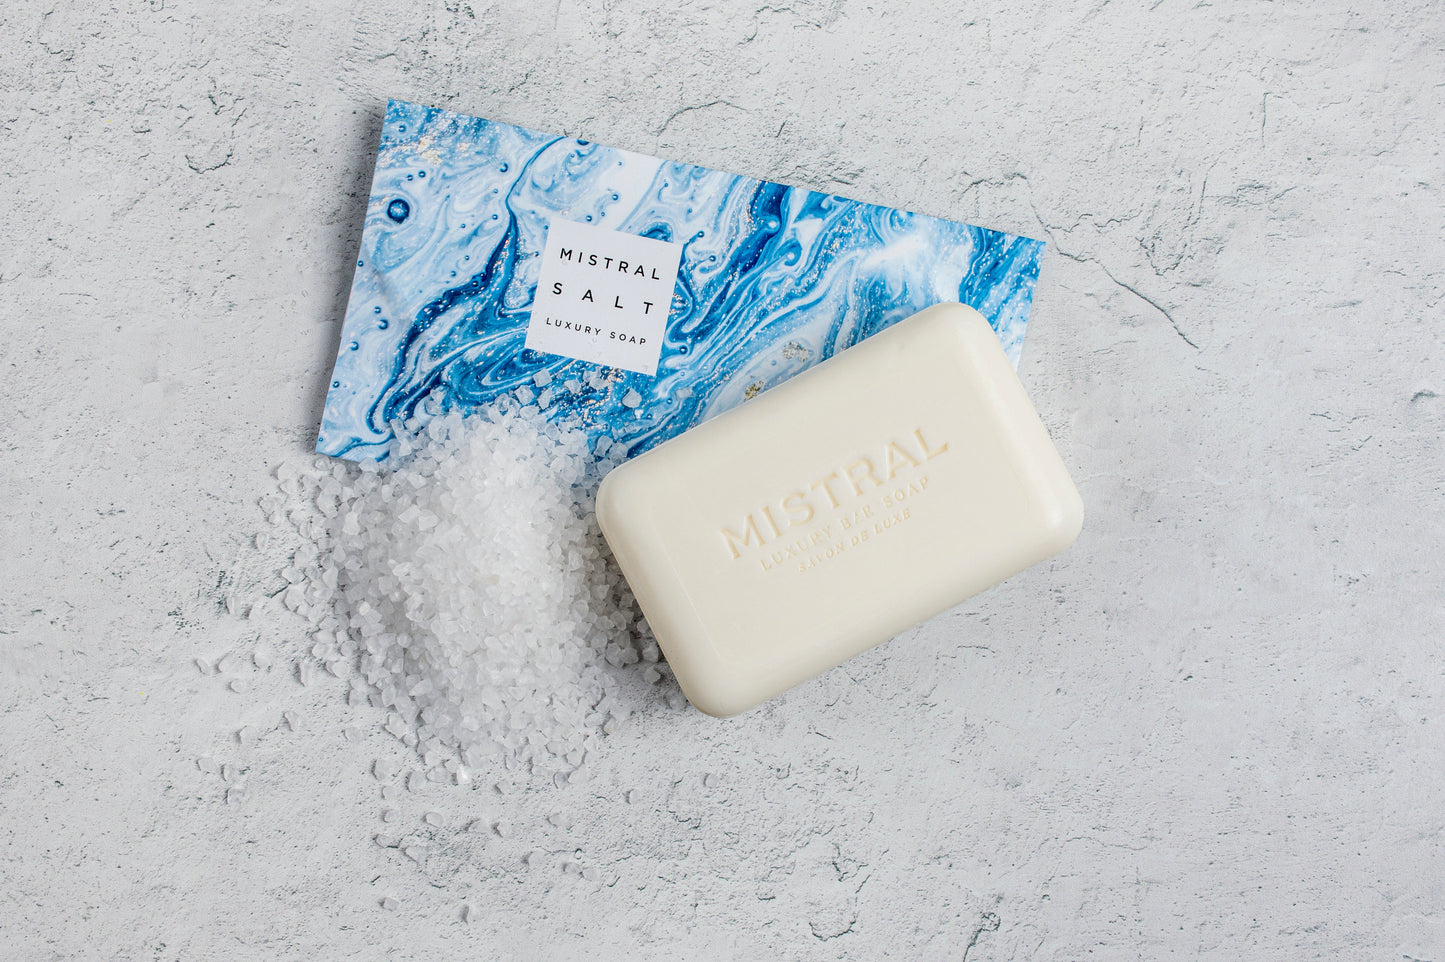 MISTRAL - Marble Salt Bar Soap